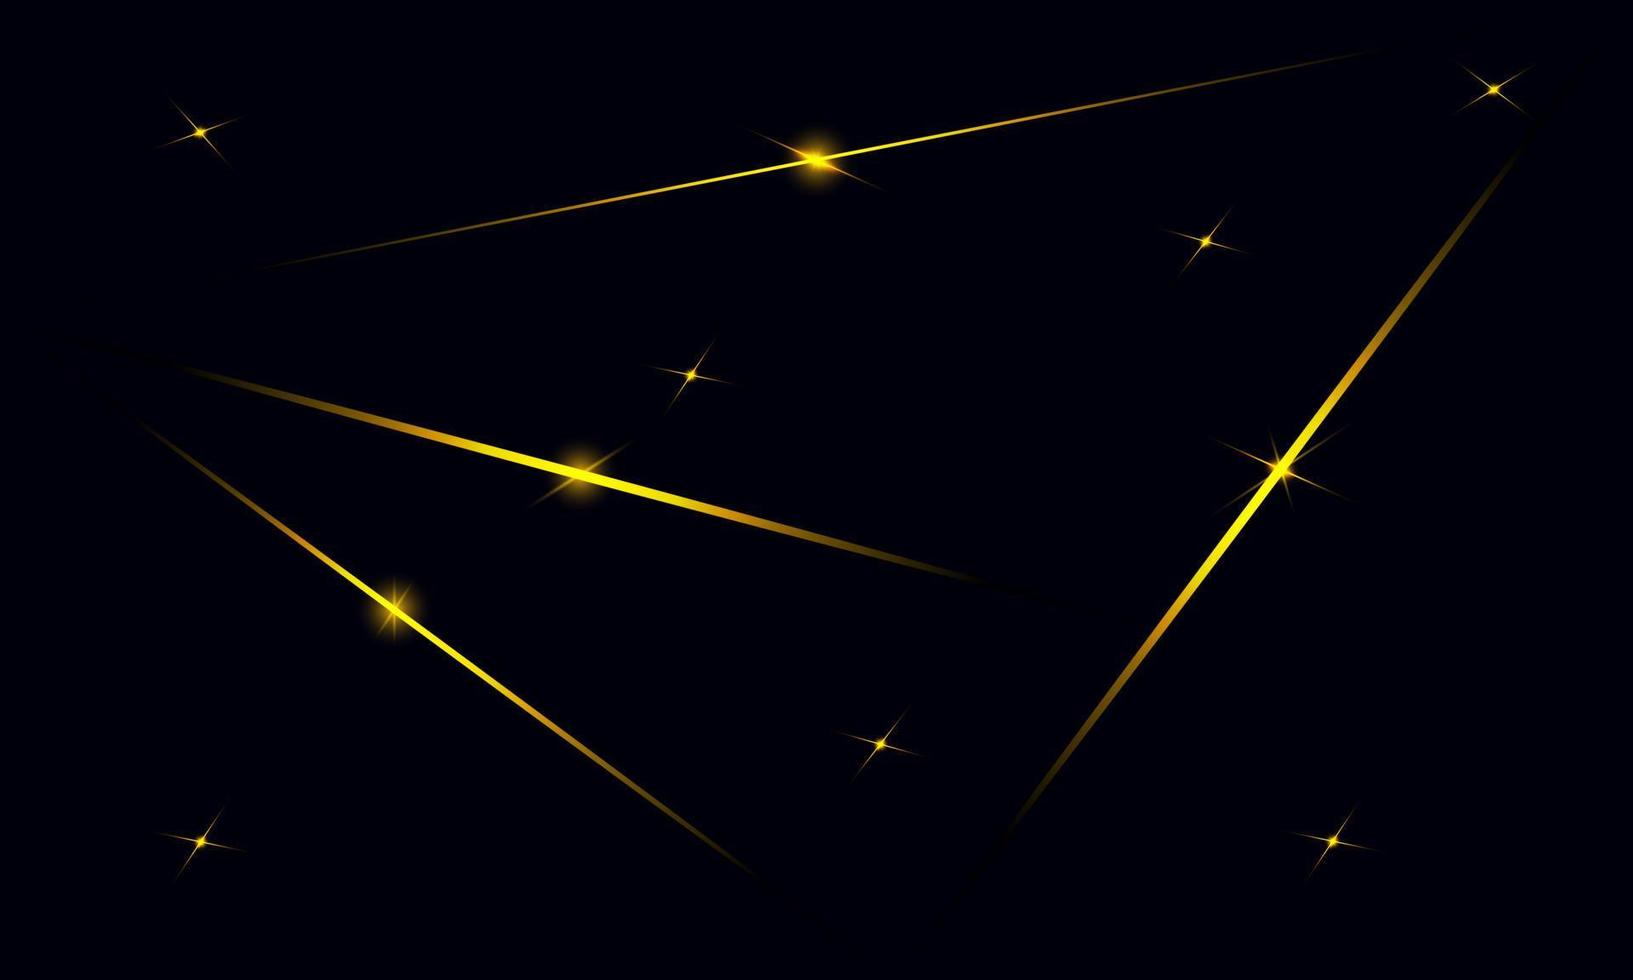 abstrakt blå polygon trianglar form mönster bakgrund med gyllene linje och ljuseffekt lyx stil. illustration vektor design digital teknik koncept.